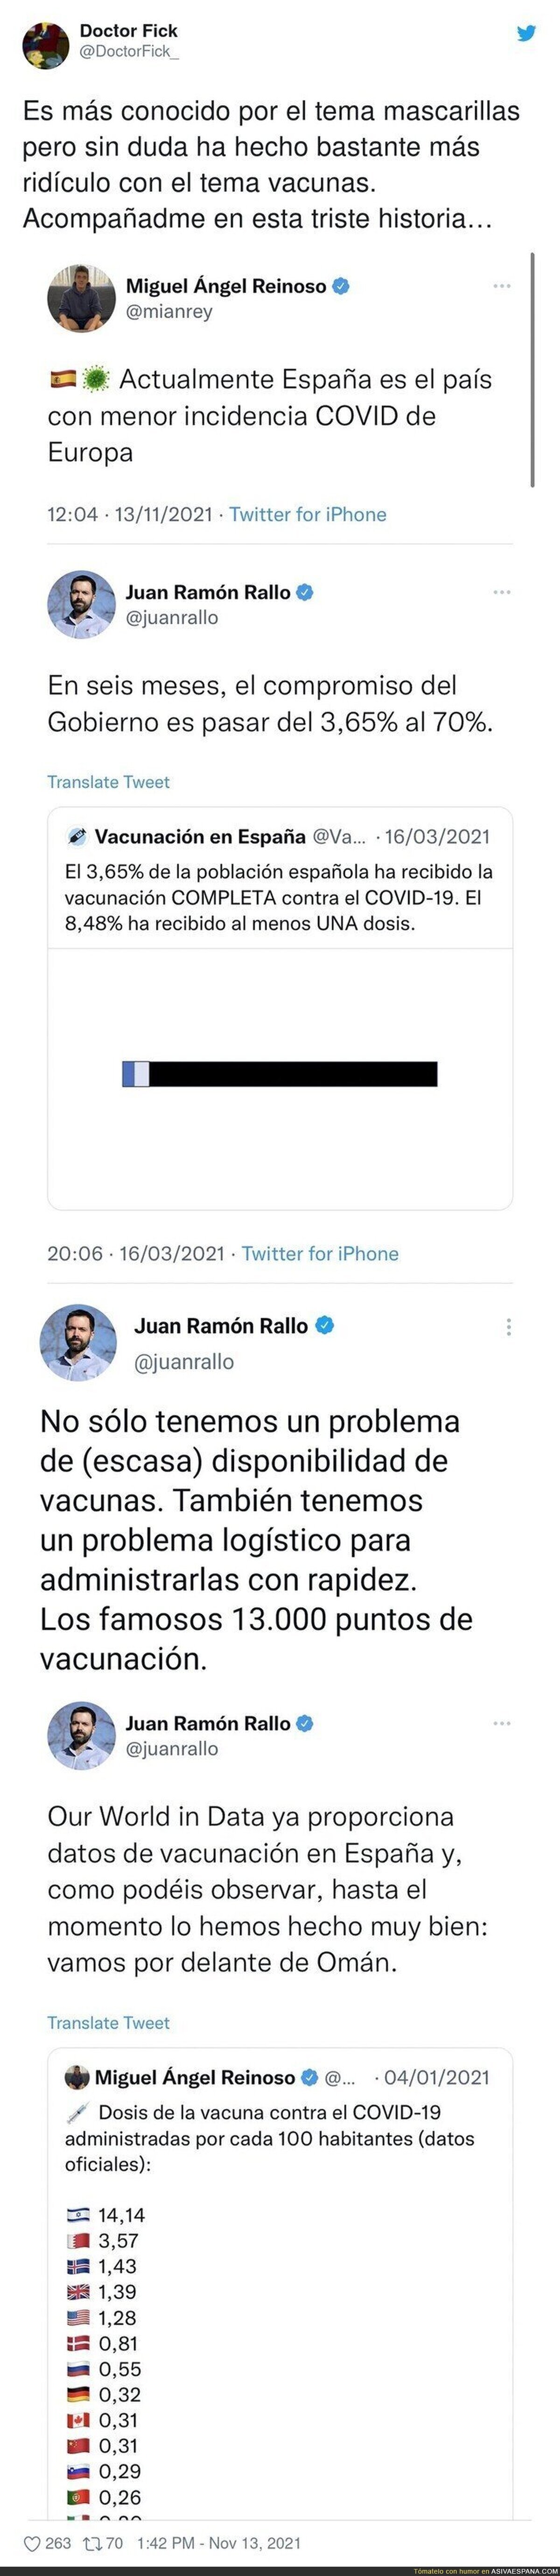 El ridículo que ha hecho Juan Ramón Rallo en el tema vacunas es monumental